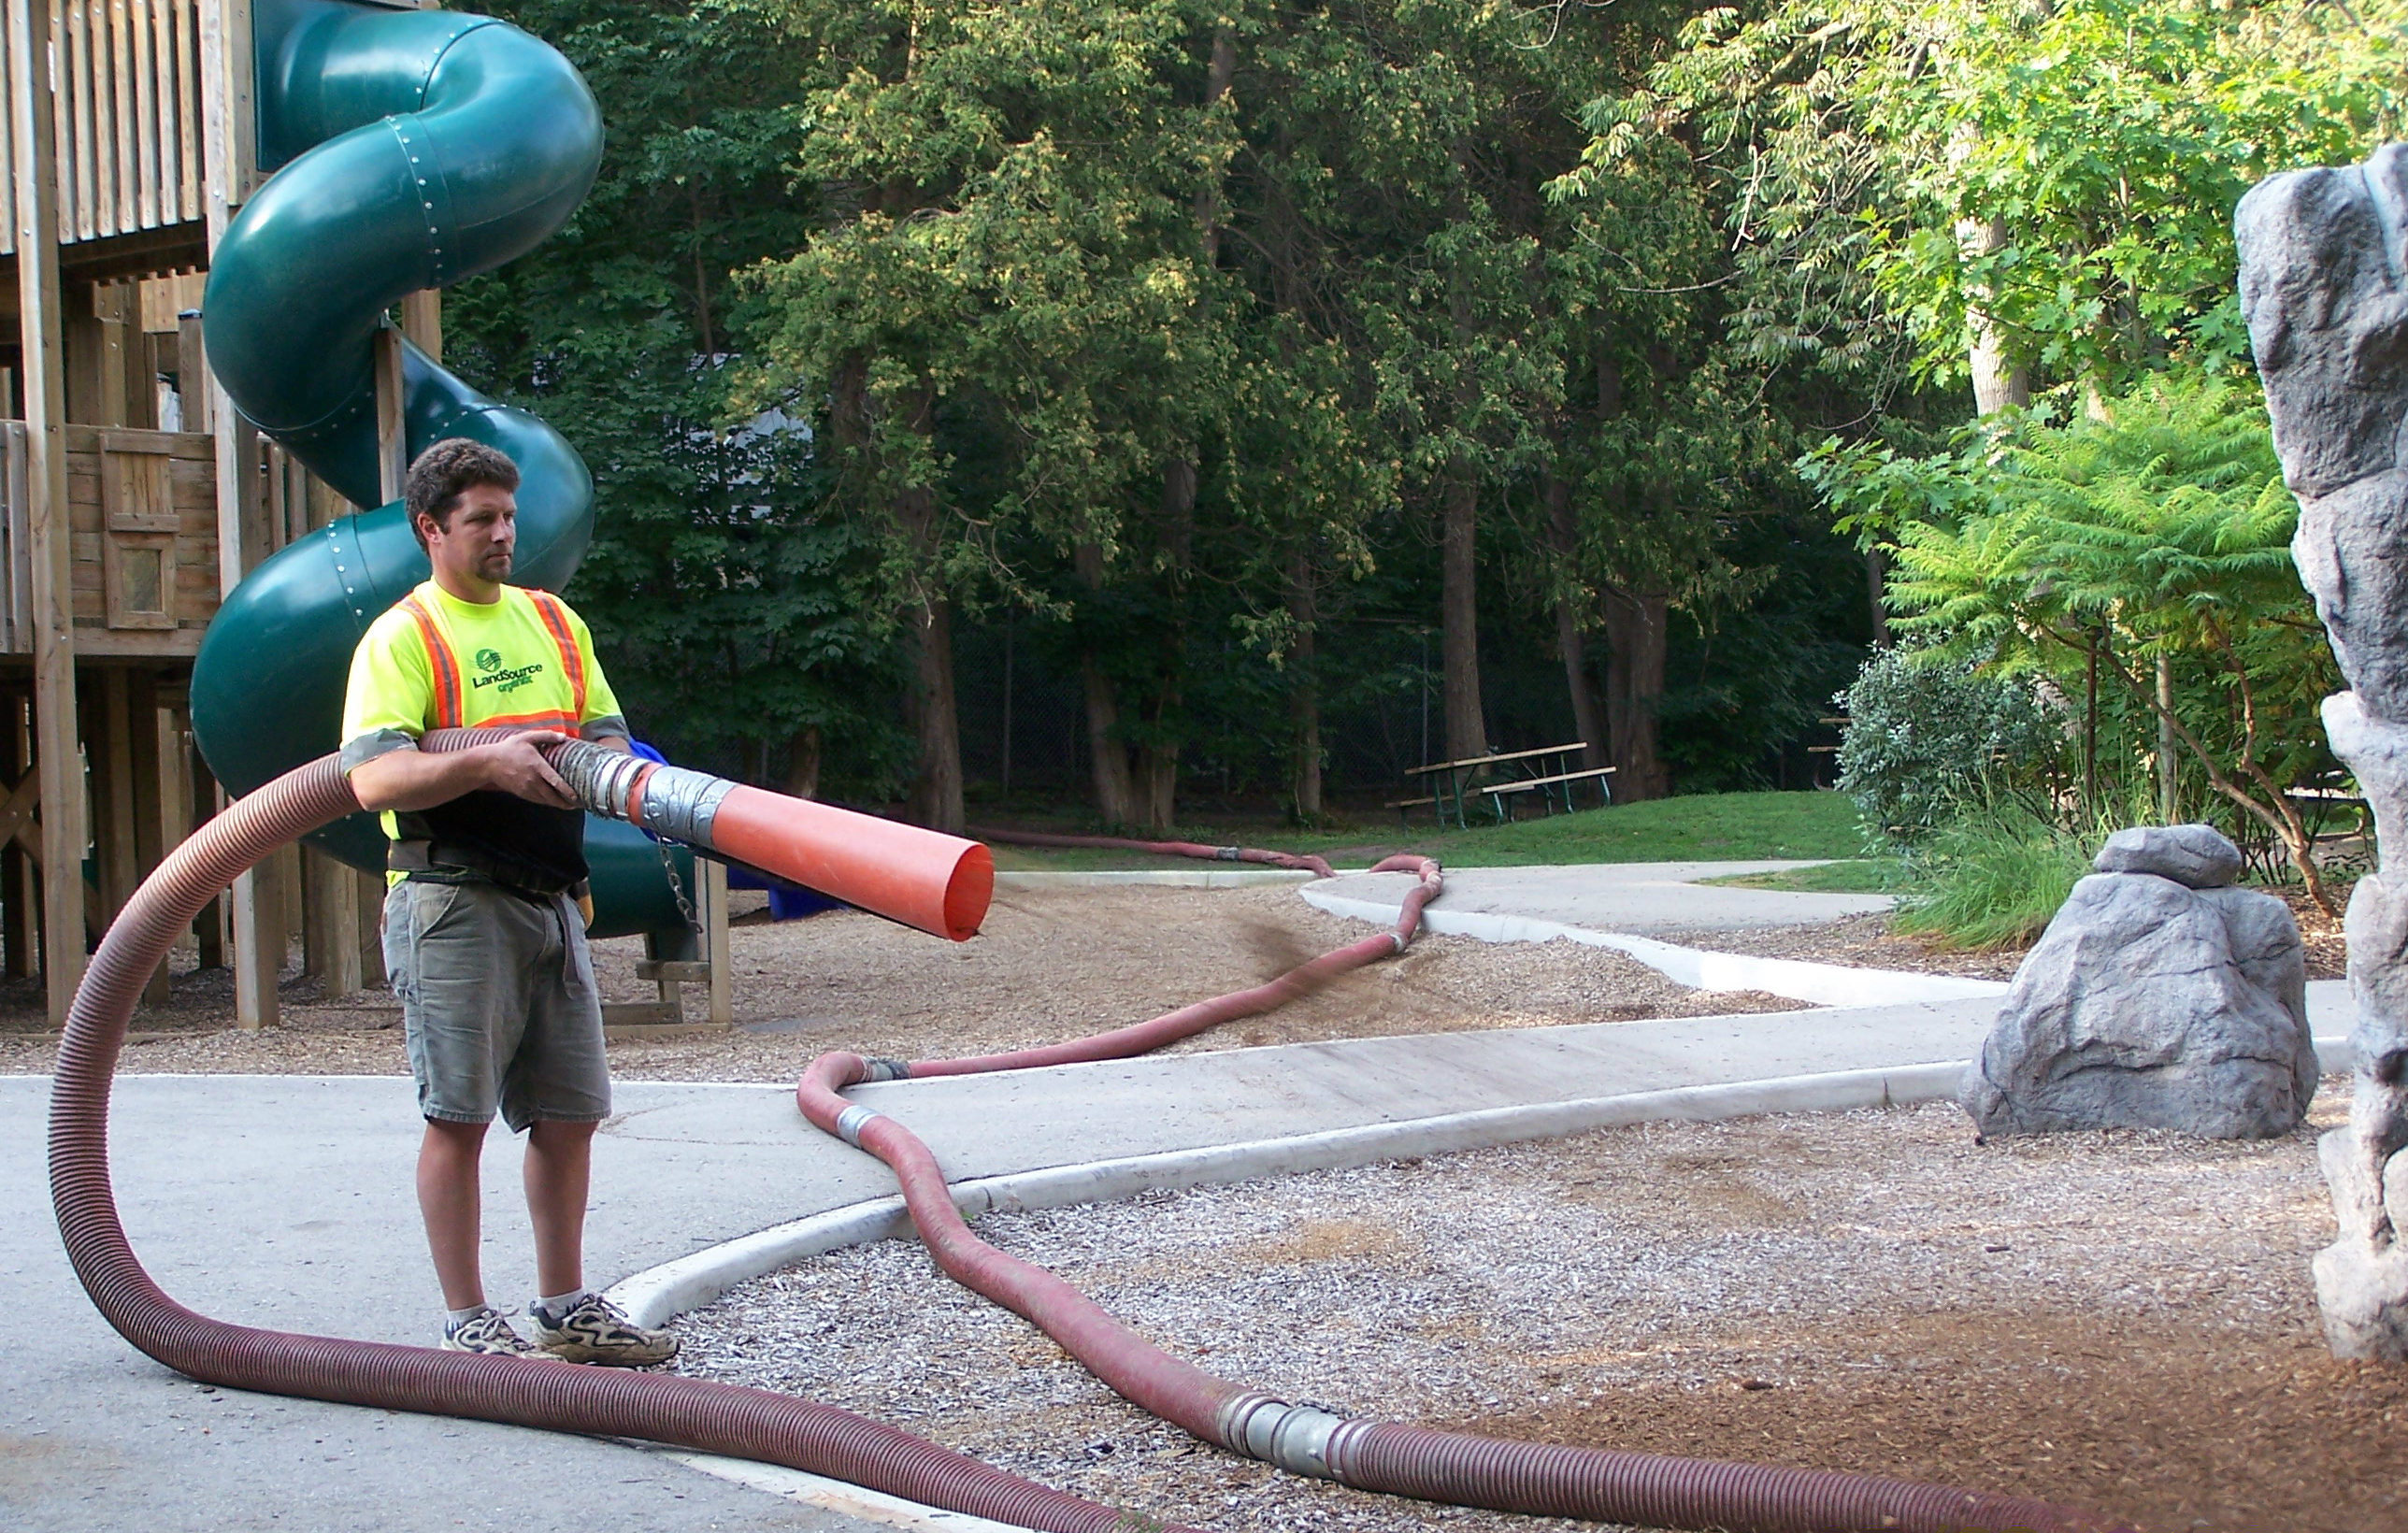 Worker handles hose that blows Fibertop material at work site